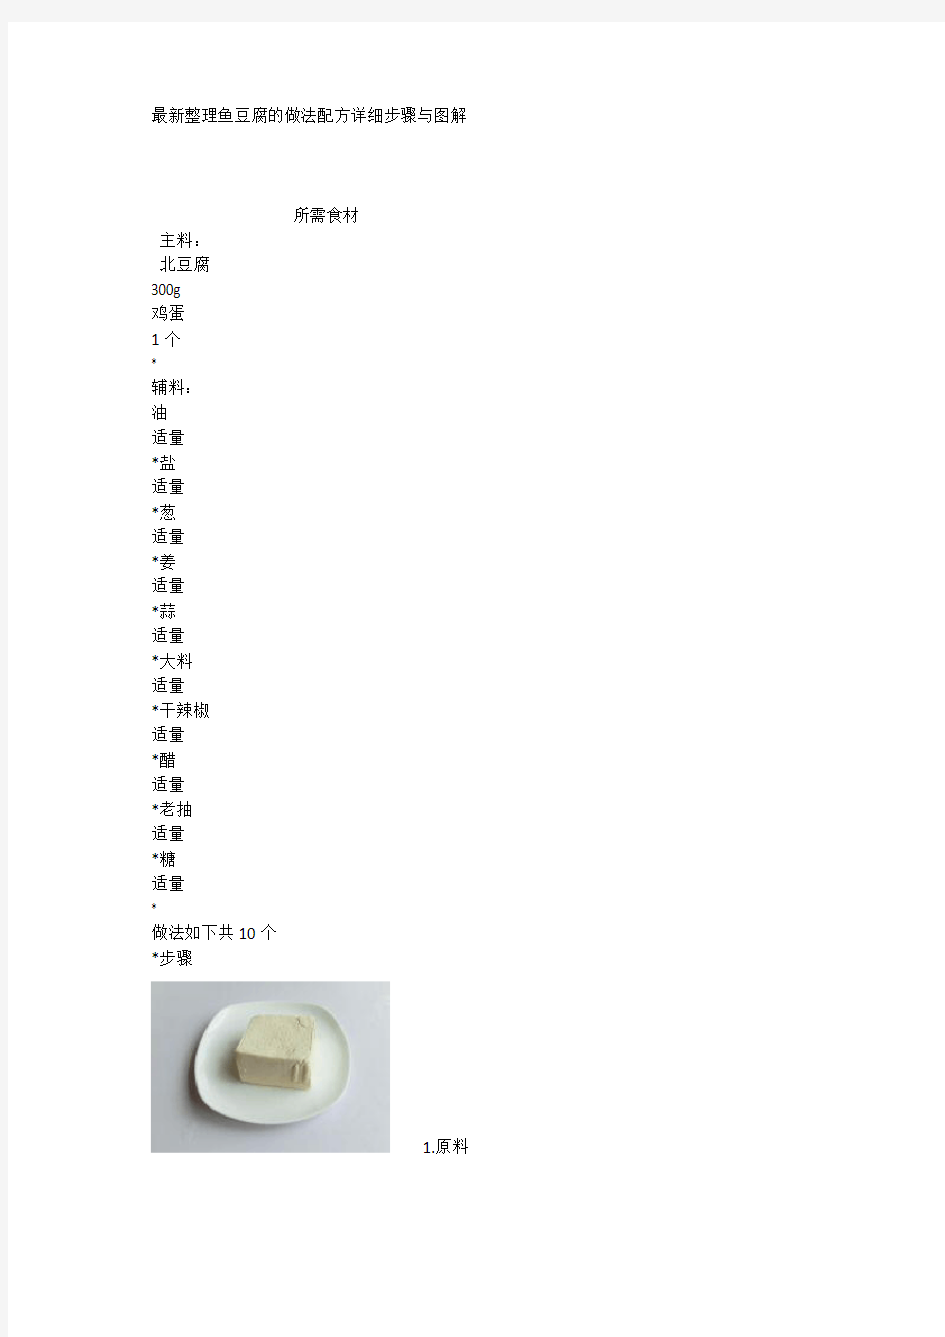 最新整理鱼豆腐的做法配方详细步骤与图解.docx